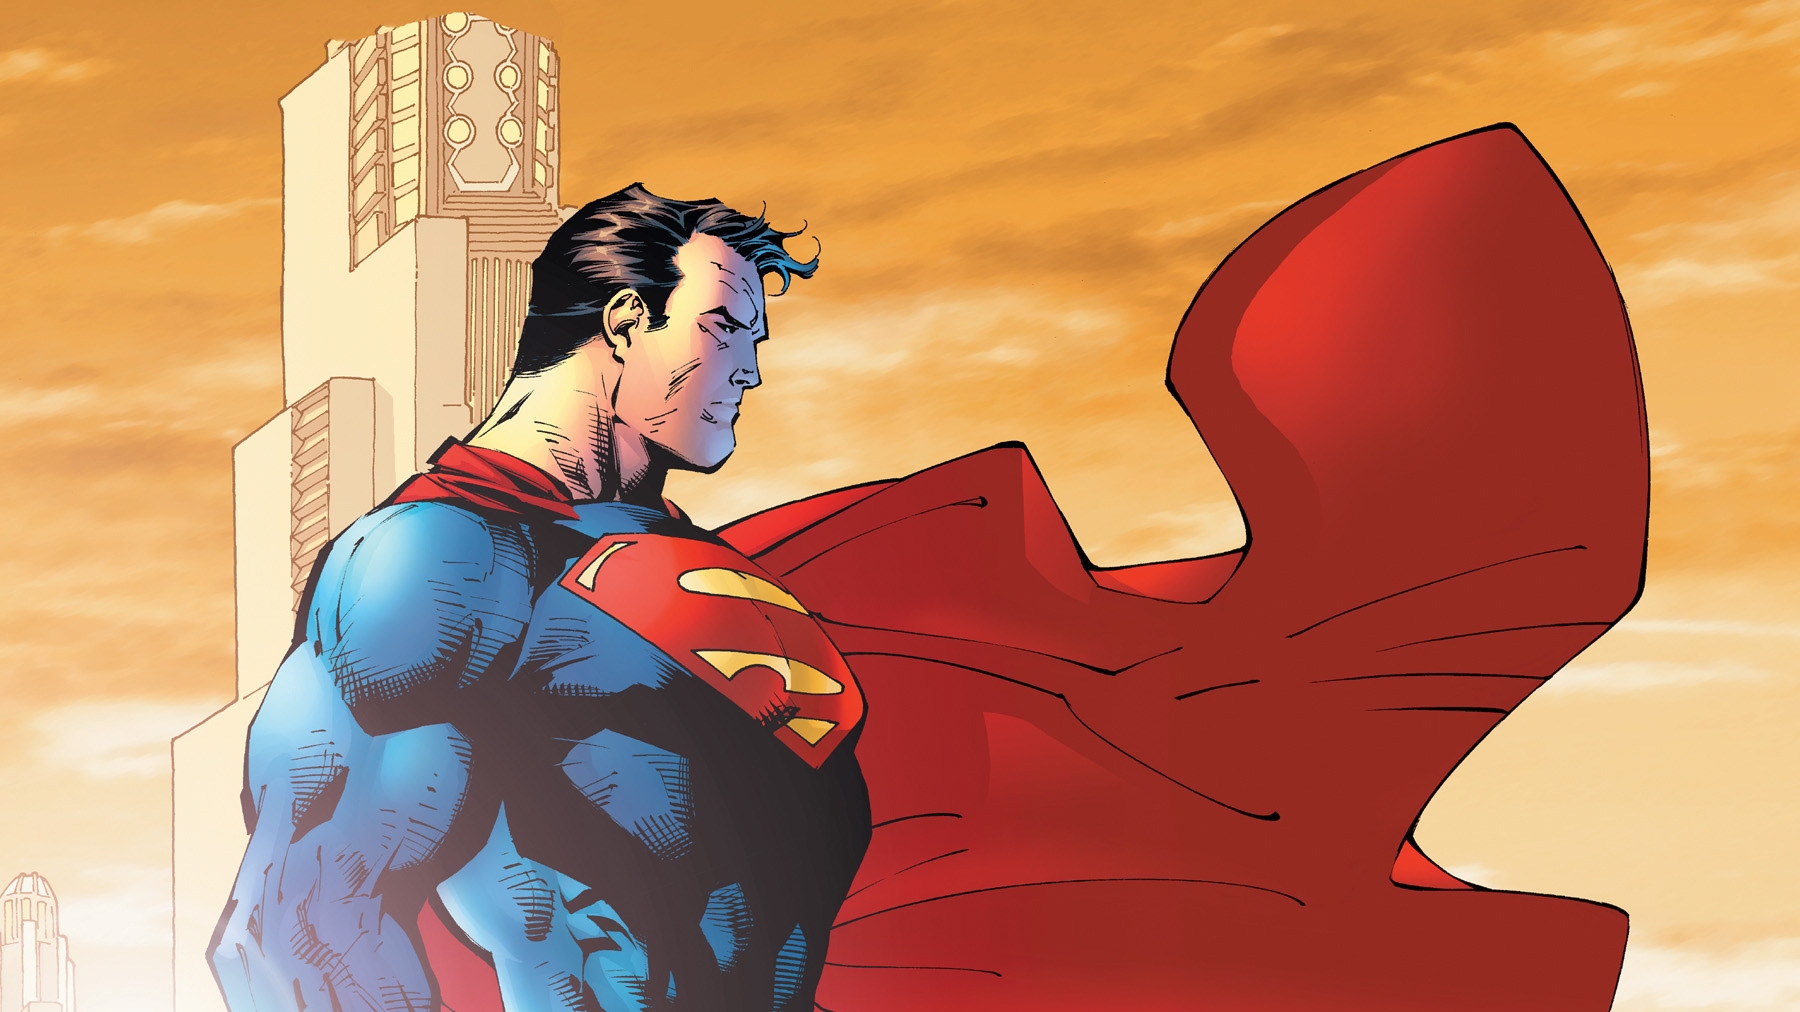 Скачать картинку Супермен, Комиксы в телефон бесплатно.